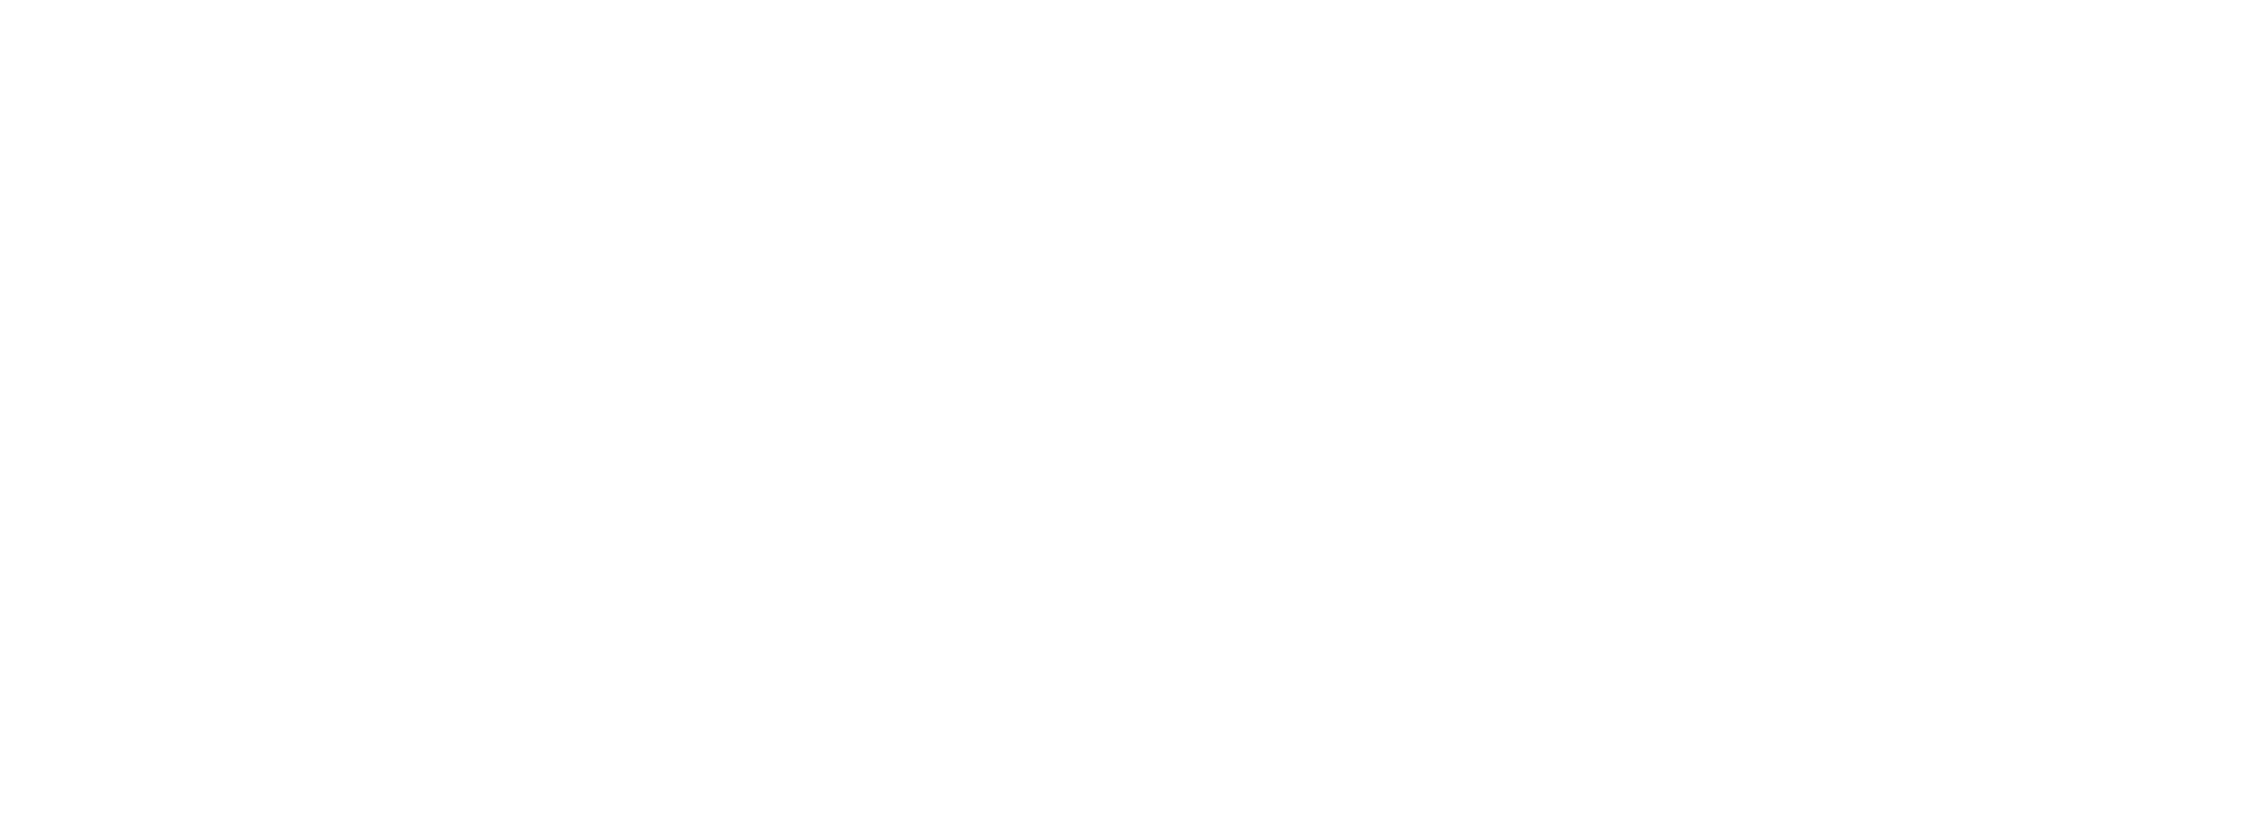 Wbgo The Jazz Source